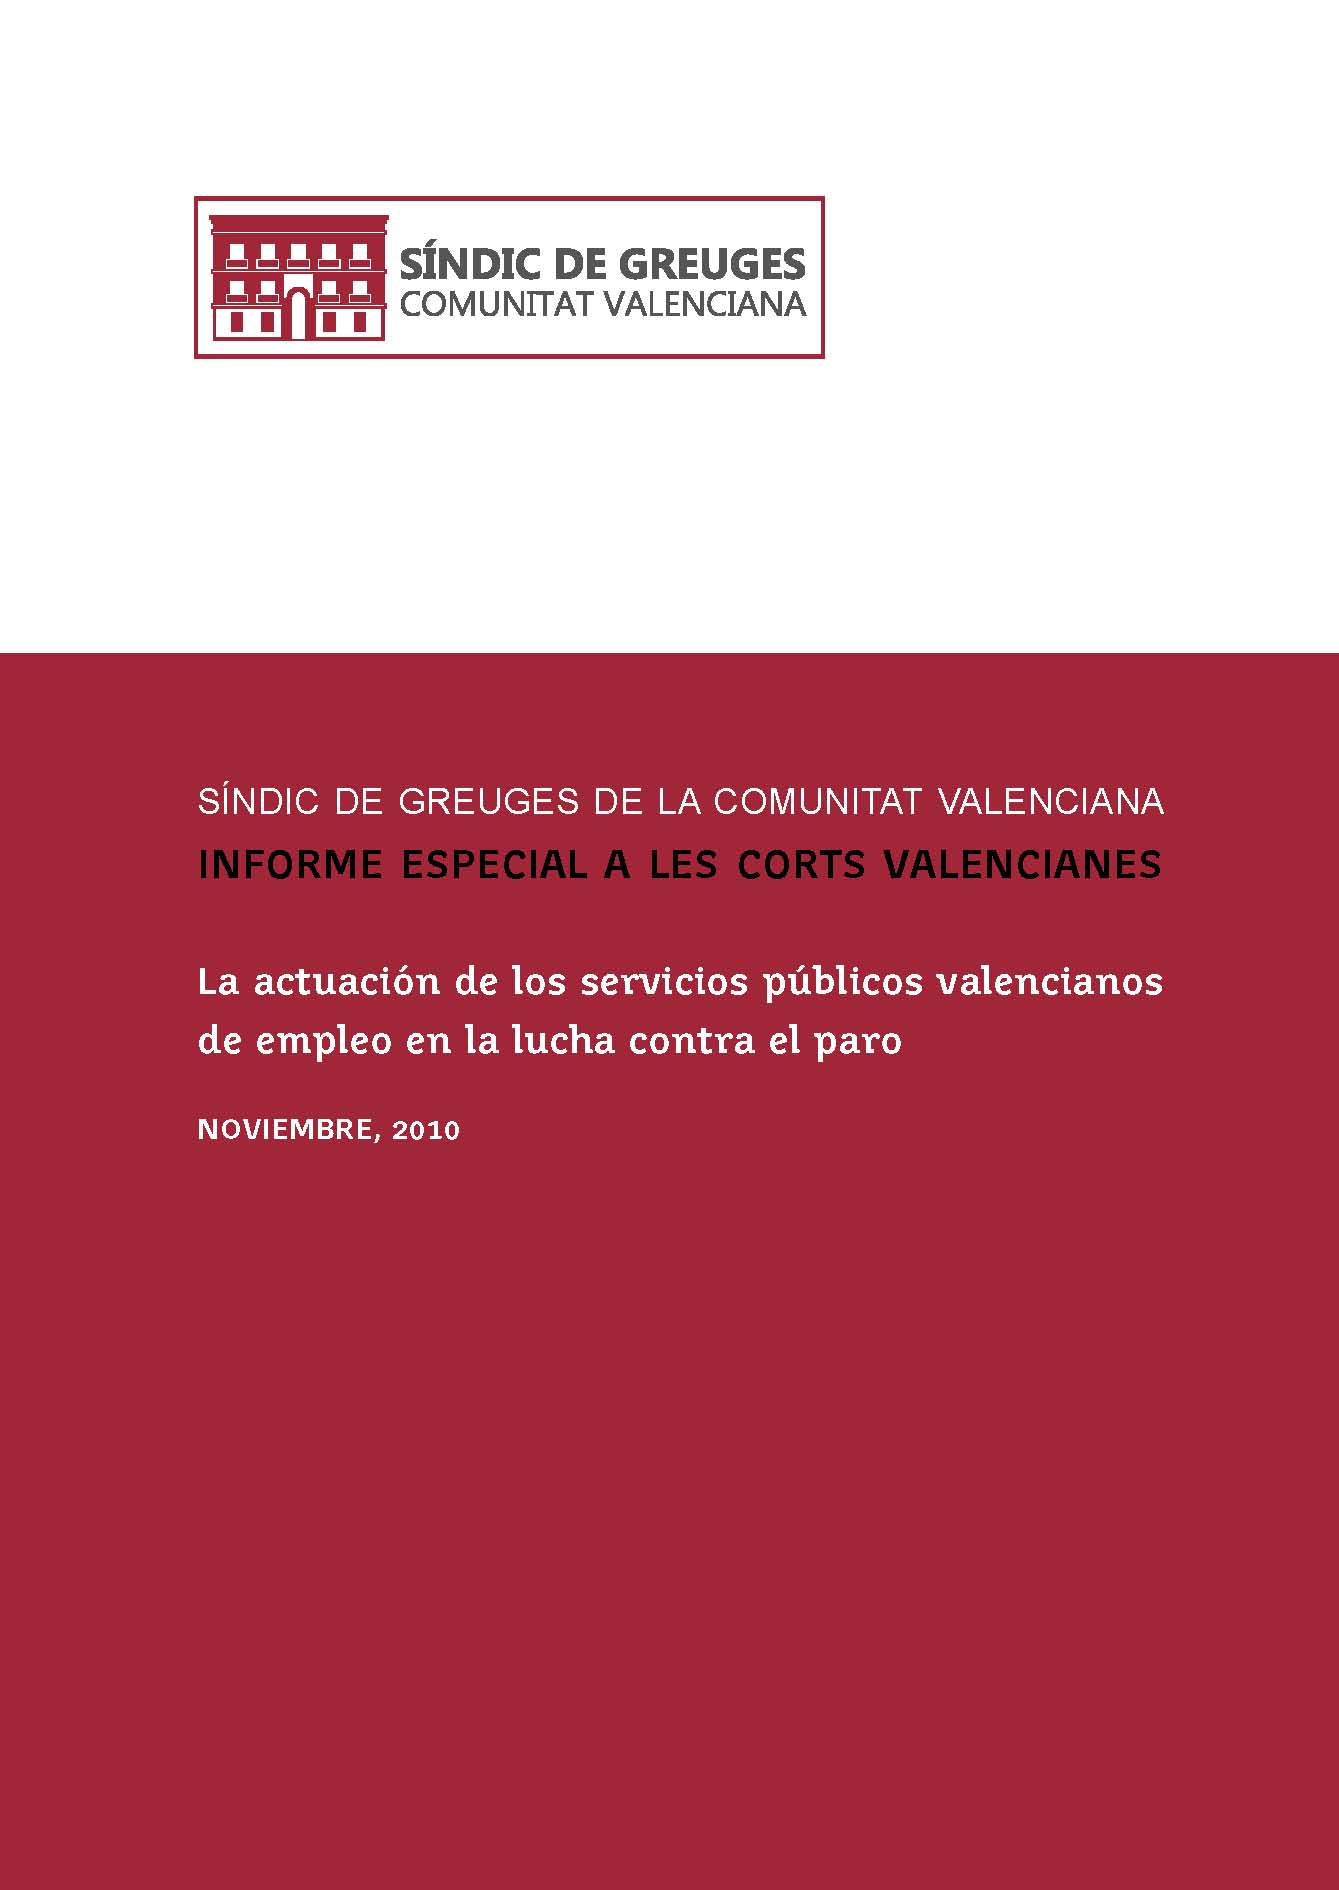 El síndic realiza un informe especial sobre la actuación de la administración en la lucha contra el paro